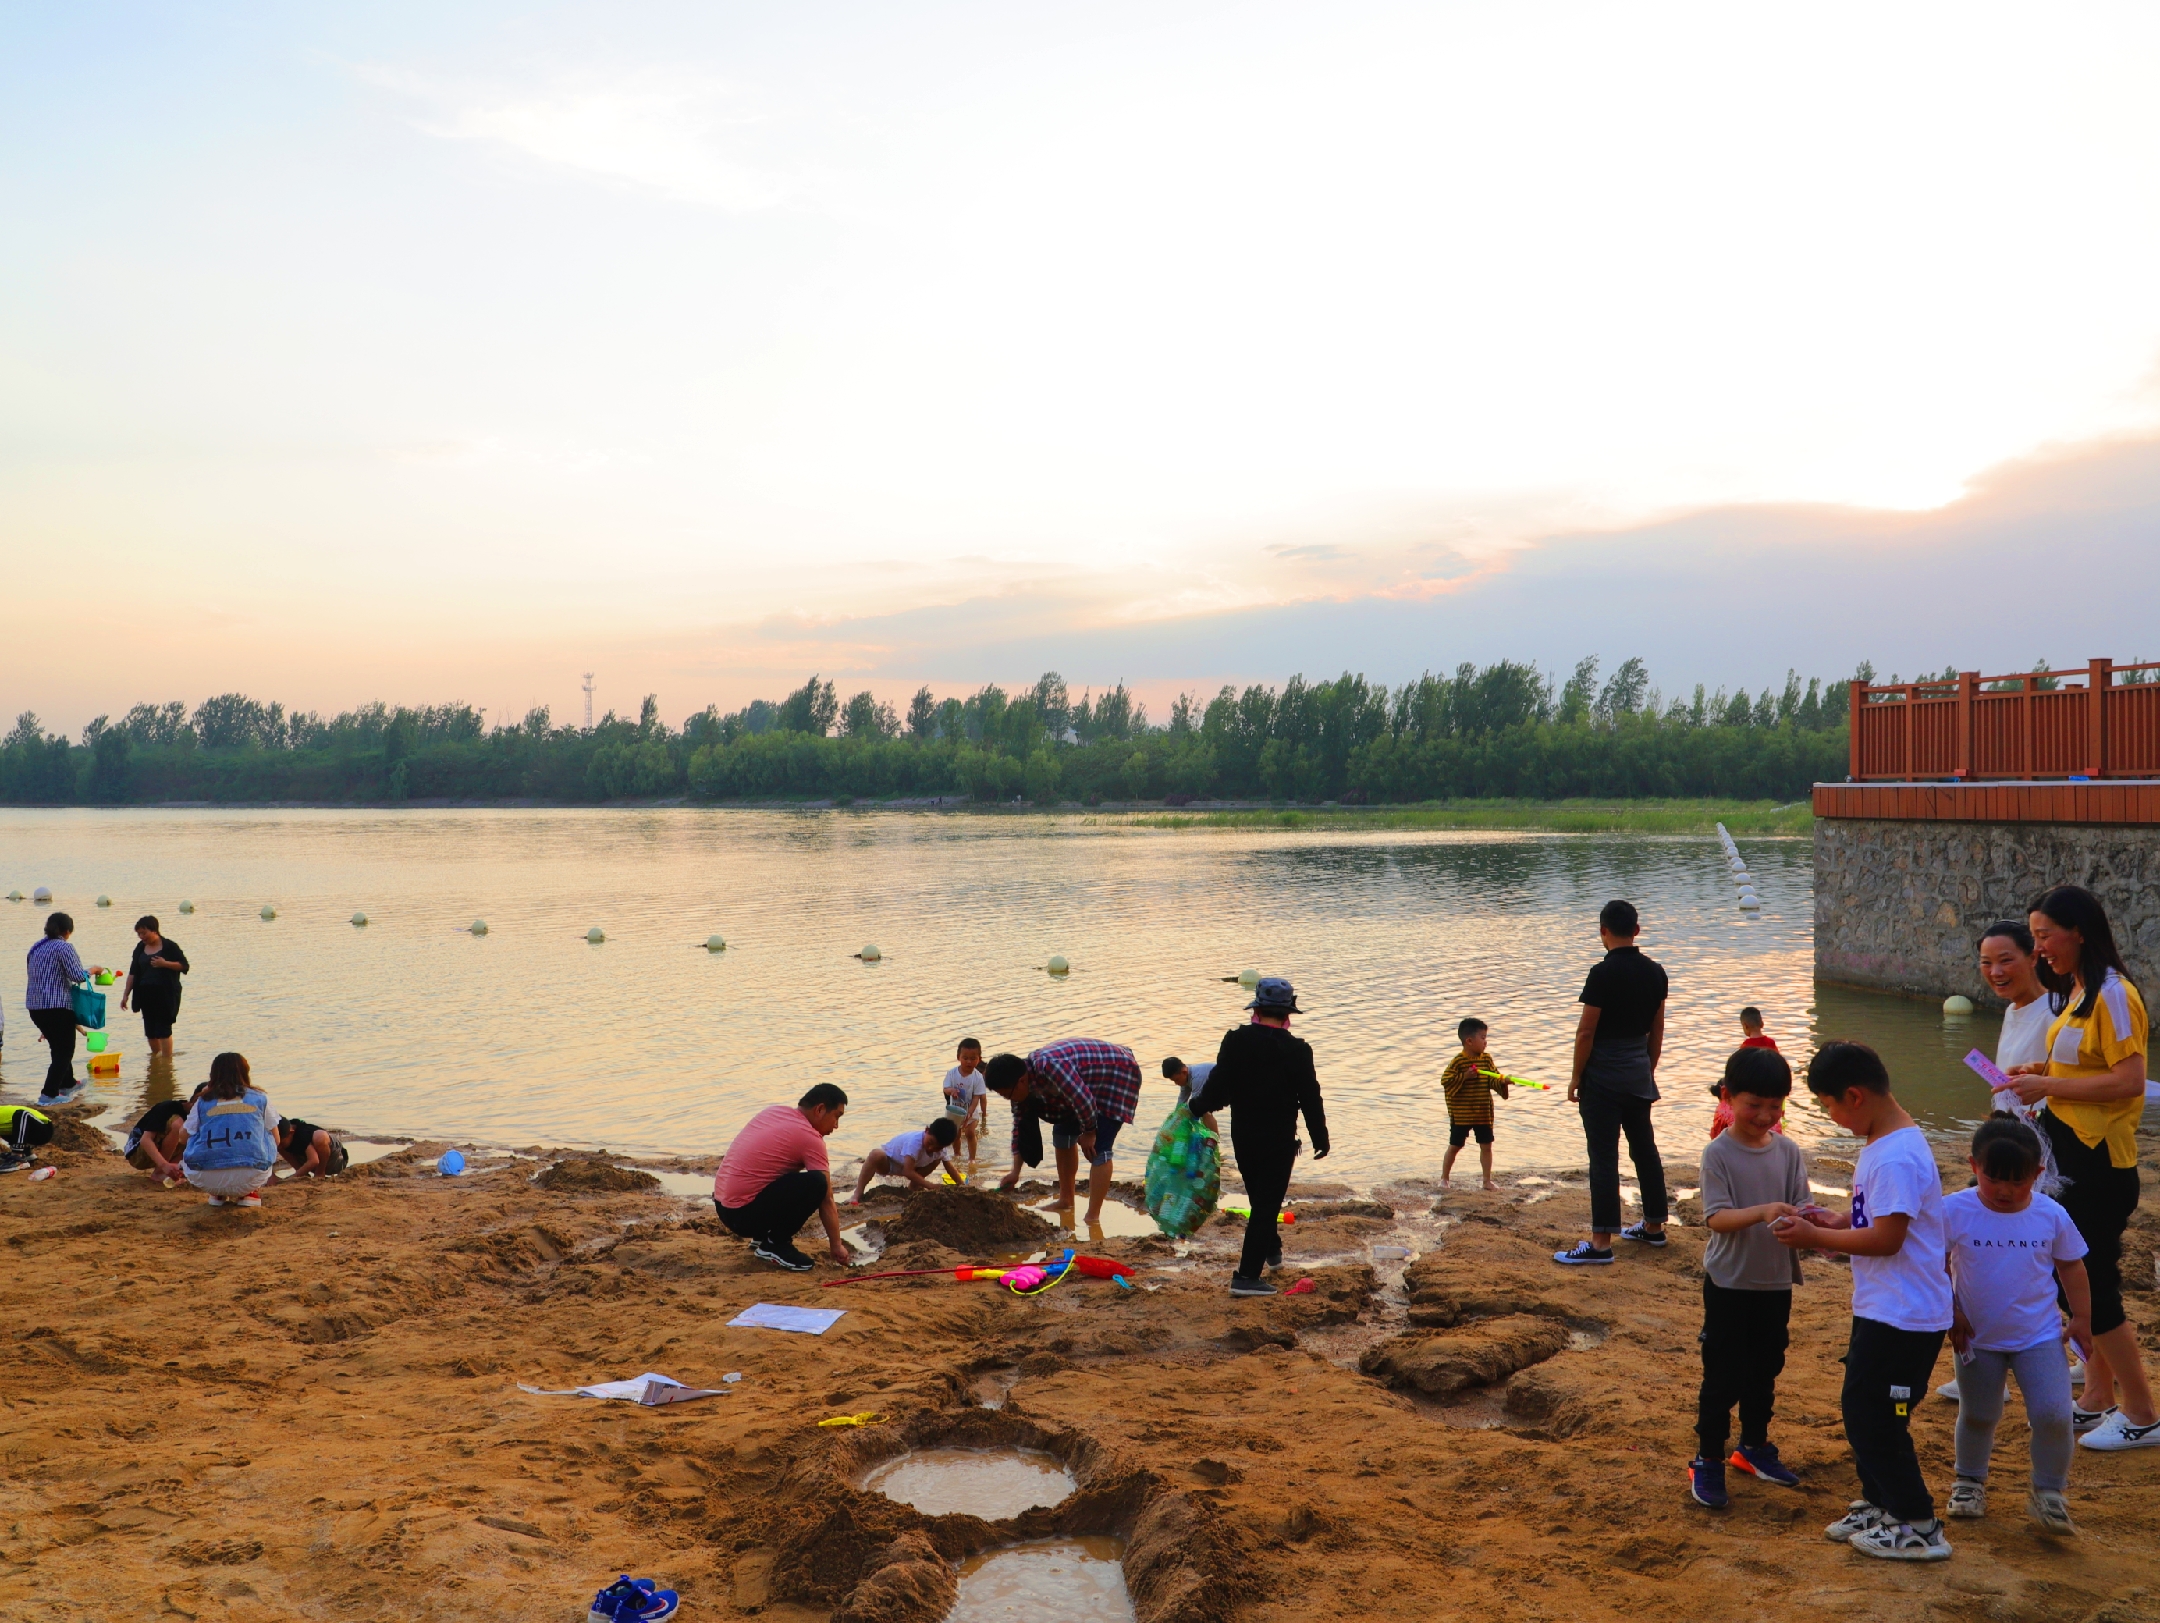 可是河南省鹤壁市淇滨区淇河滩上,孩子们全然不顾,都在兴致勃勃地